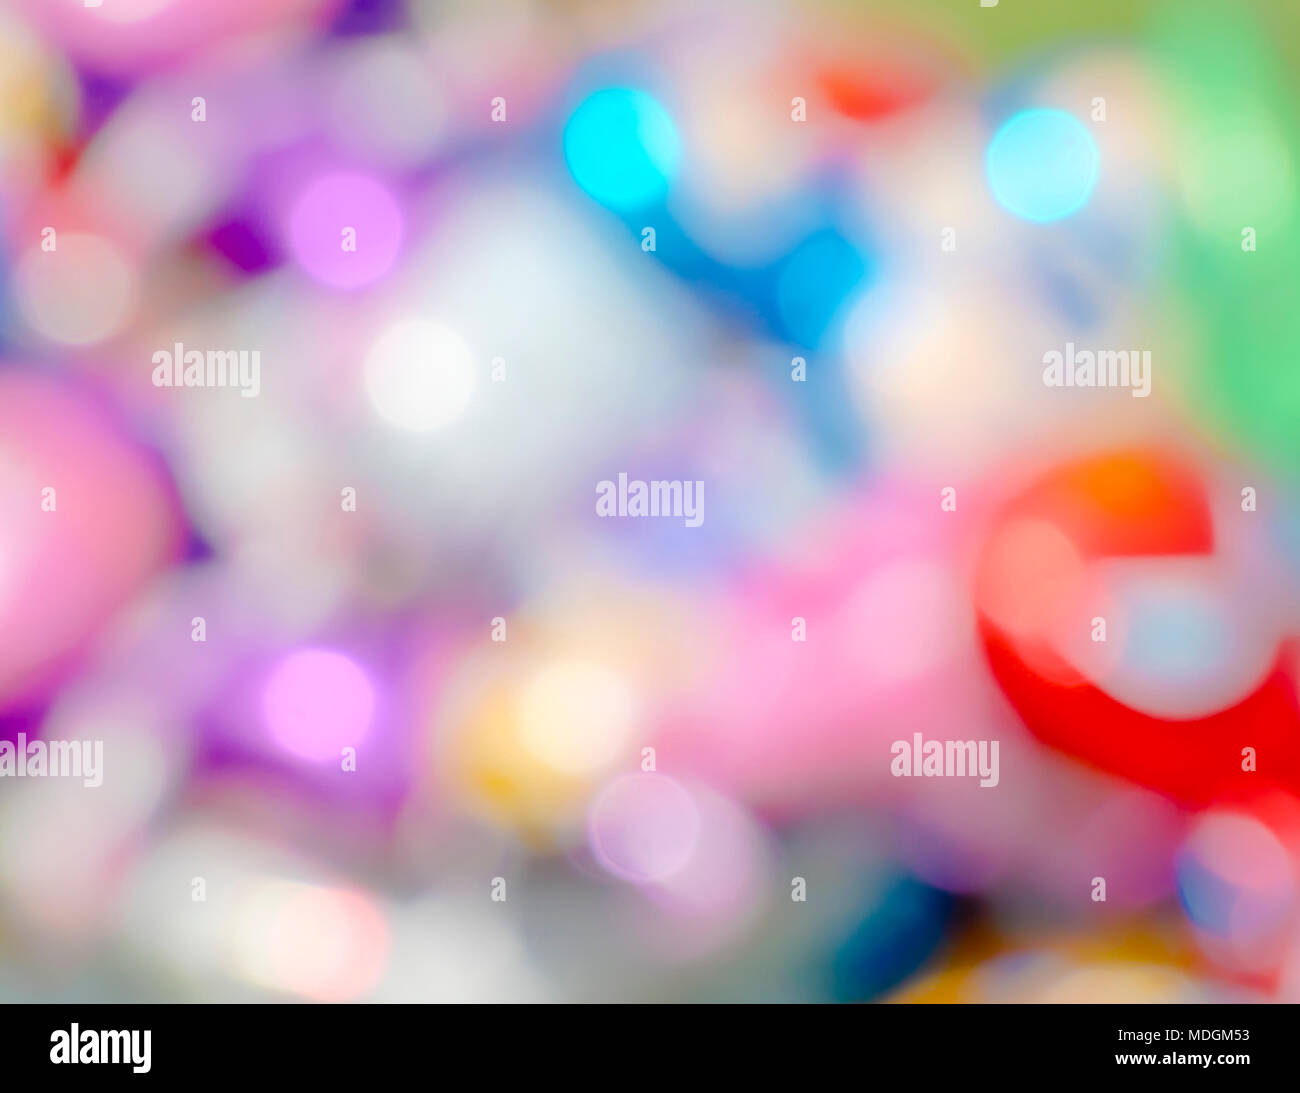 Abstract colorati pastello soffice riflessioni fondo liscio Foto Stock